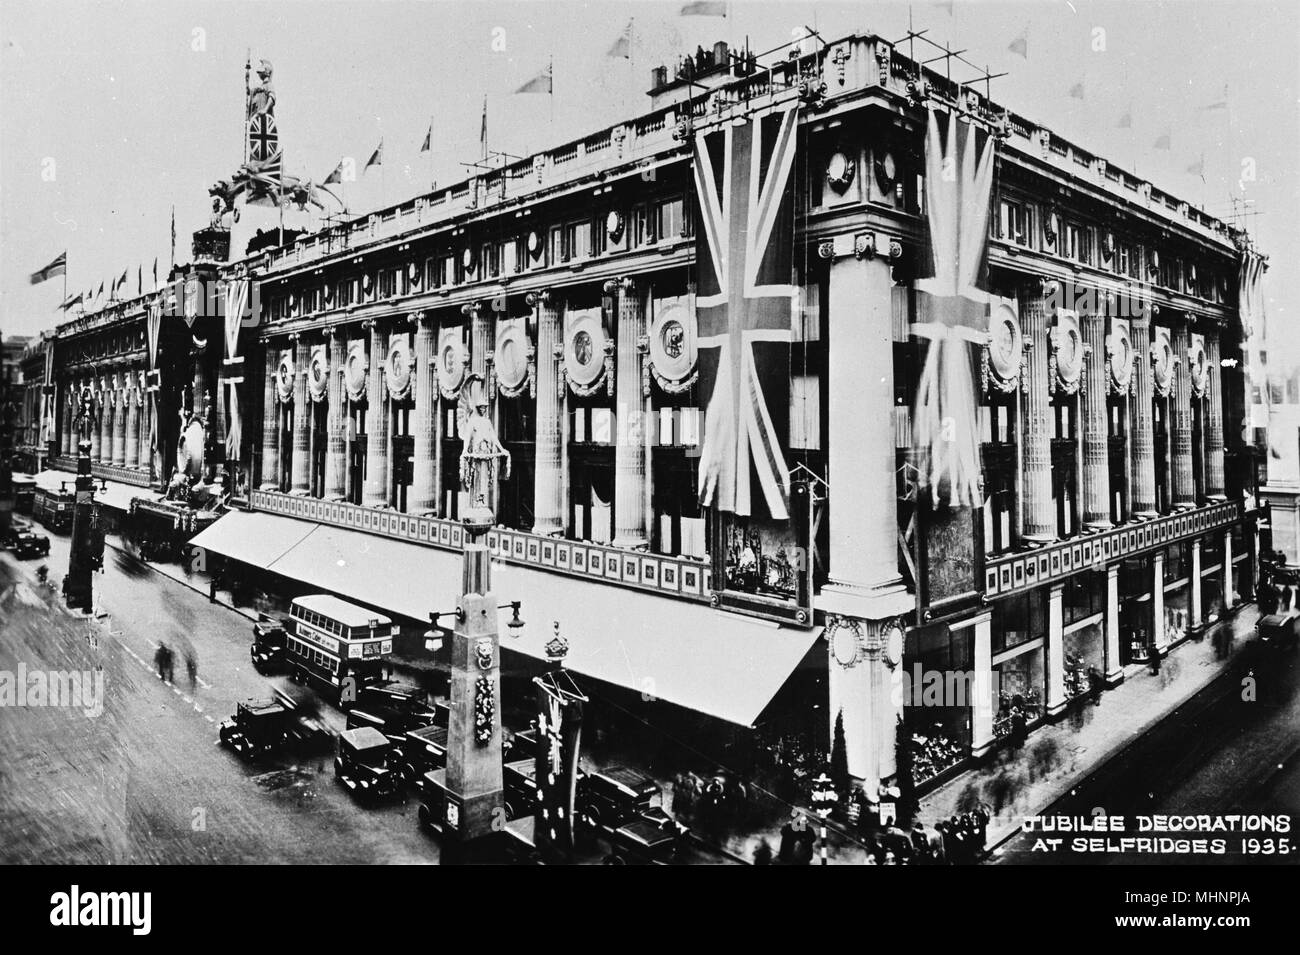 Dal grande magazzino Selfridges, Oxford Street, London W1, decorato per il 1935 Silver celebrazioni giubilari. Data: 1935 Foto Stock